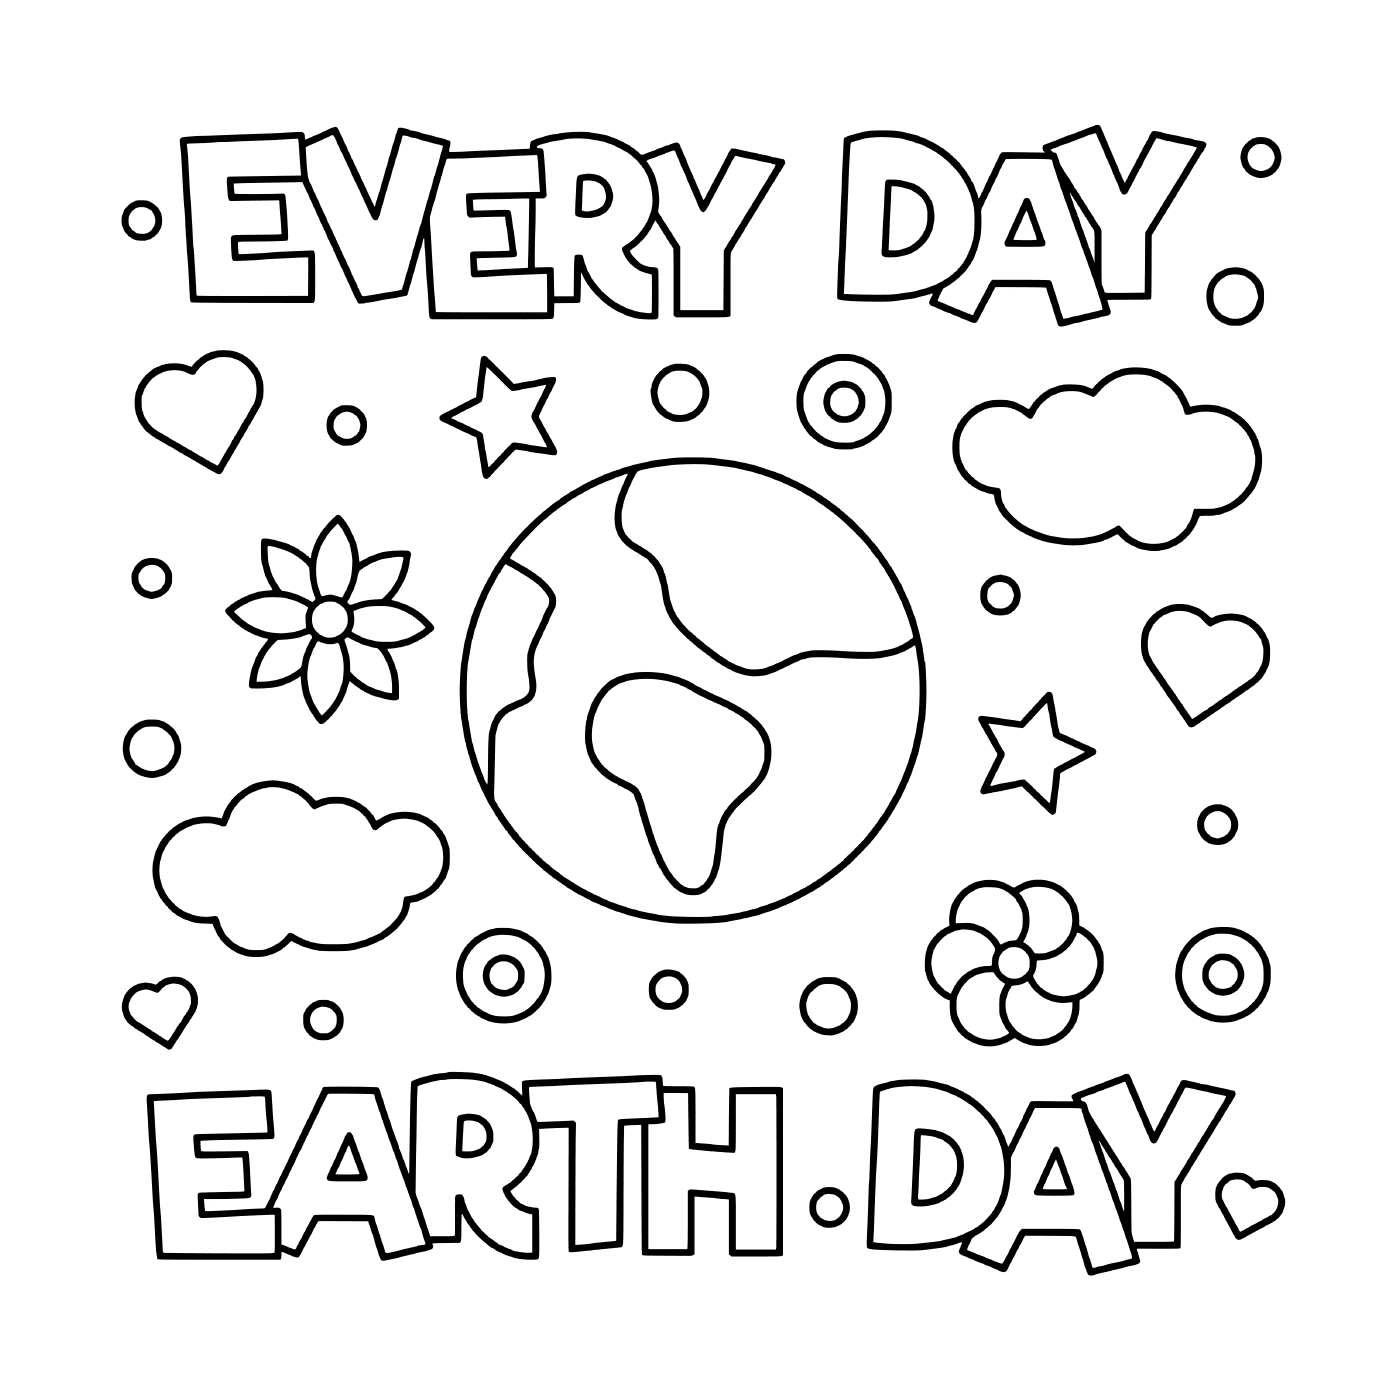  Tag der Erde: Jeden Tag 